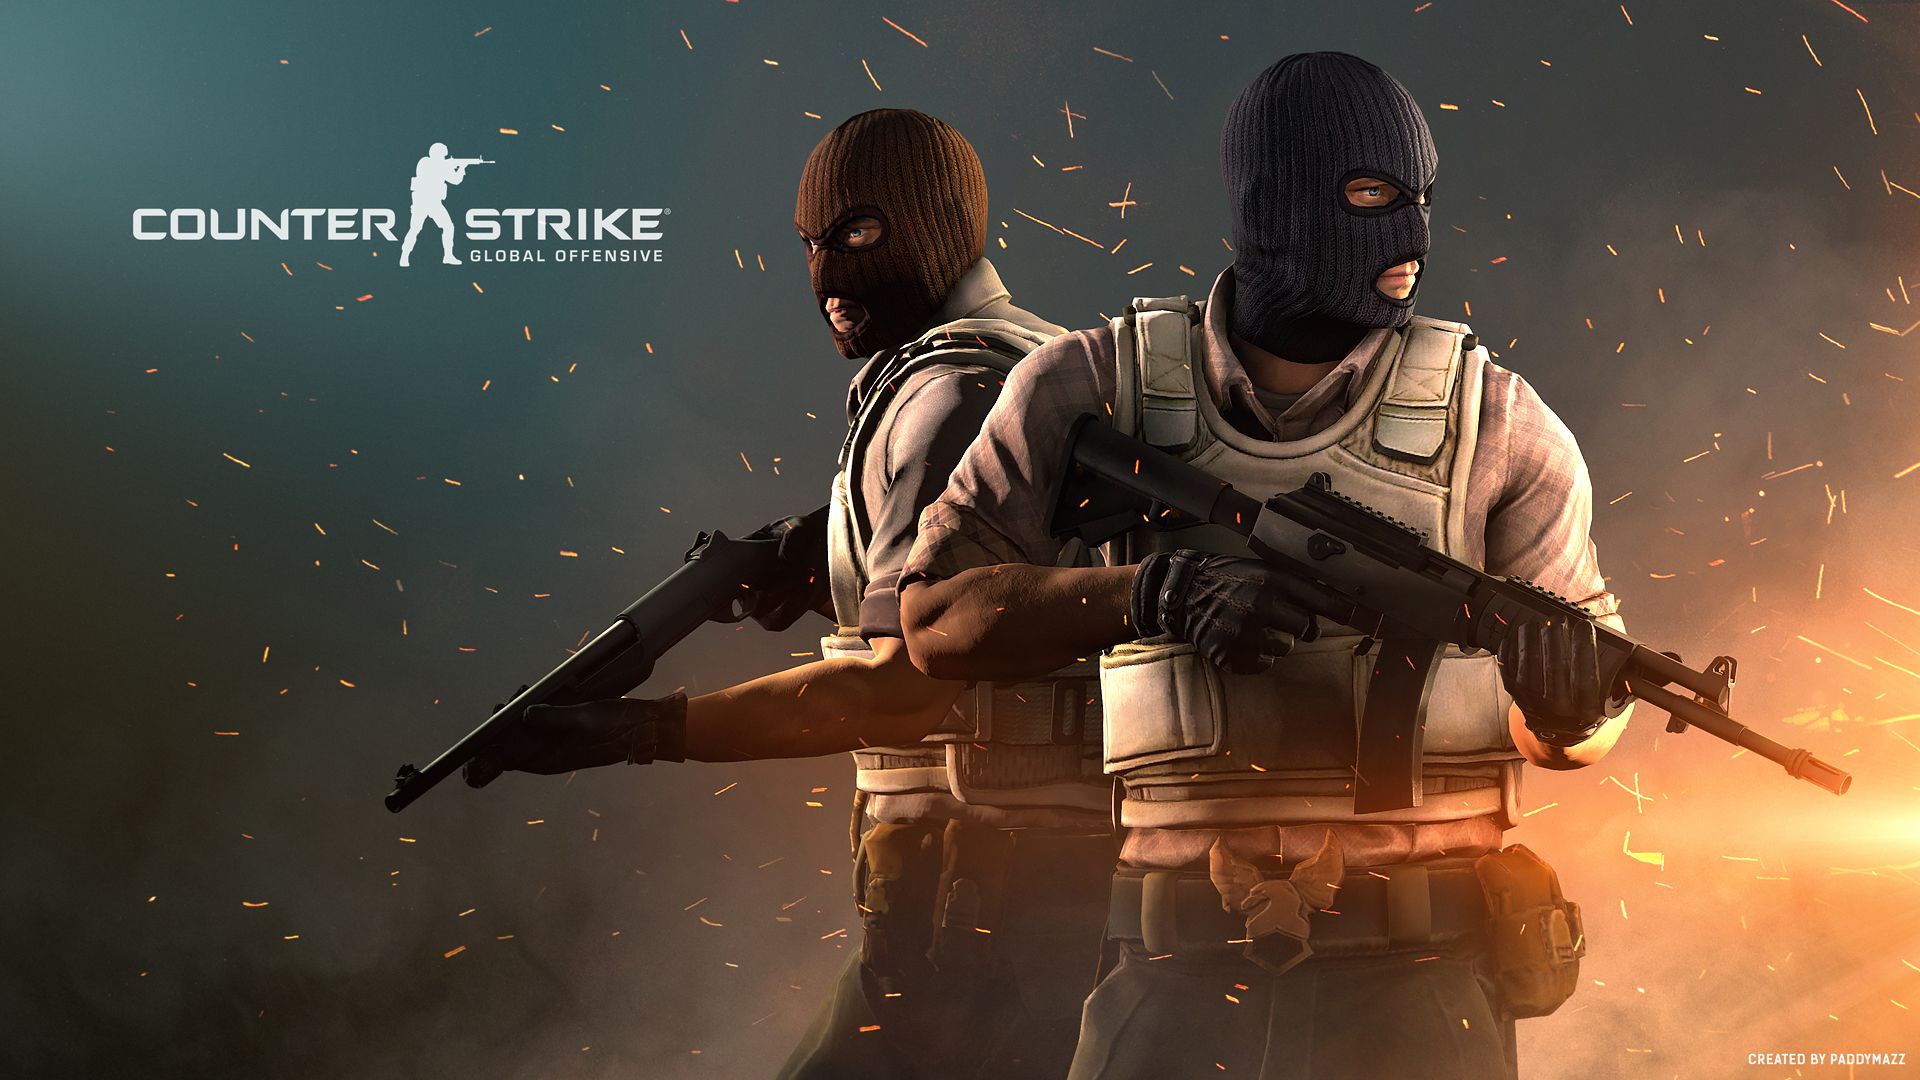 Jogador revela vídeo de Counter Strike: Source 2 em projeto de